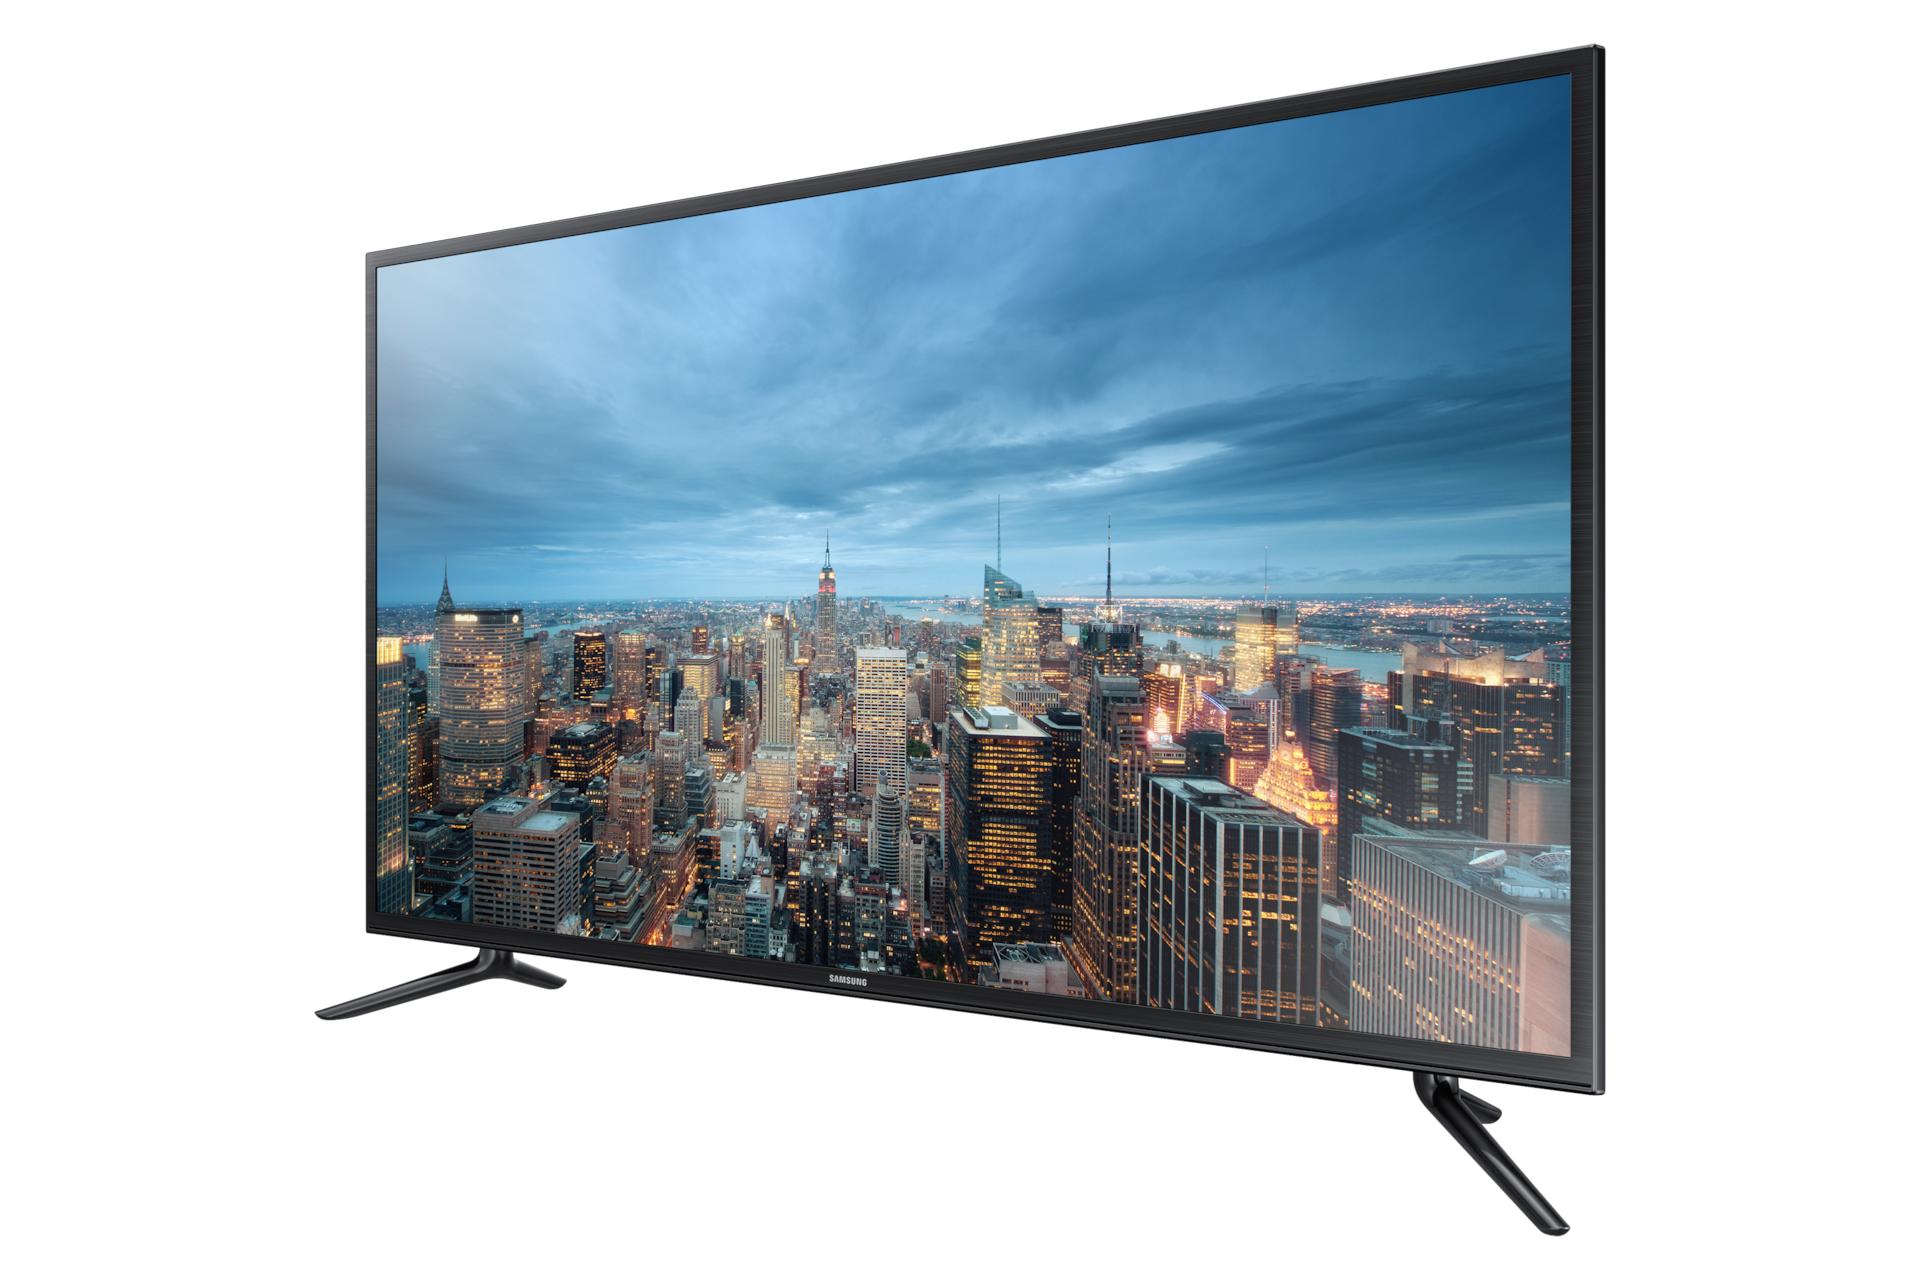 Телевизор недорого в москве распродажа. Samsung ue55ju6530u. Samsung ue43ju6000u. Samsung Smart TV 40. Телевизор Samsung ue48ju6000u 48" (2015).